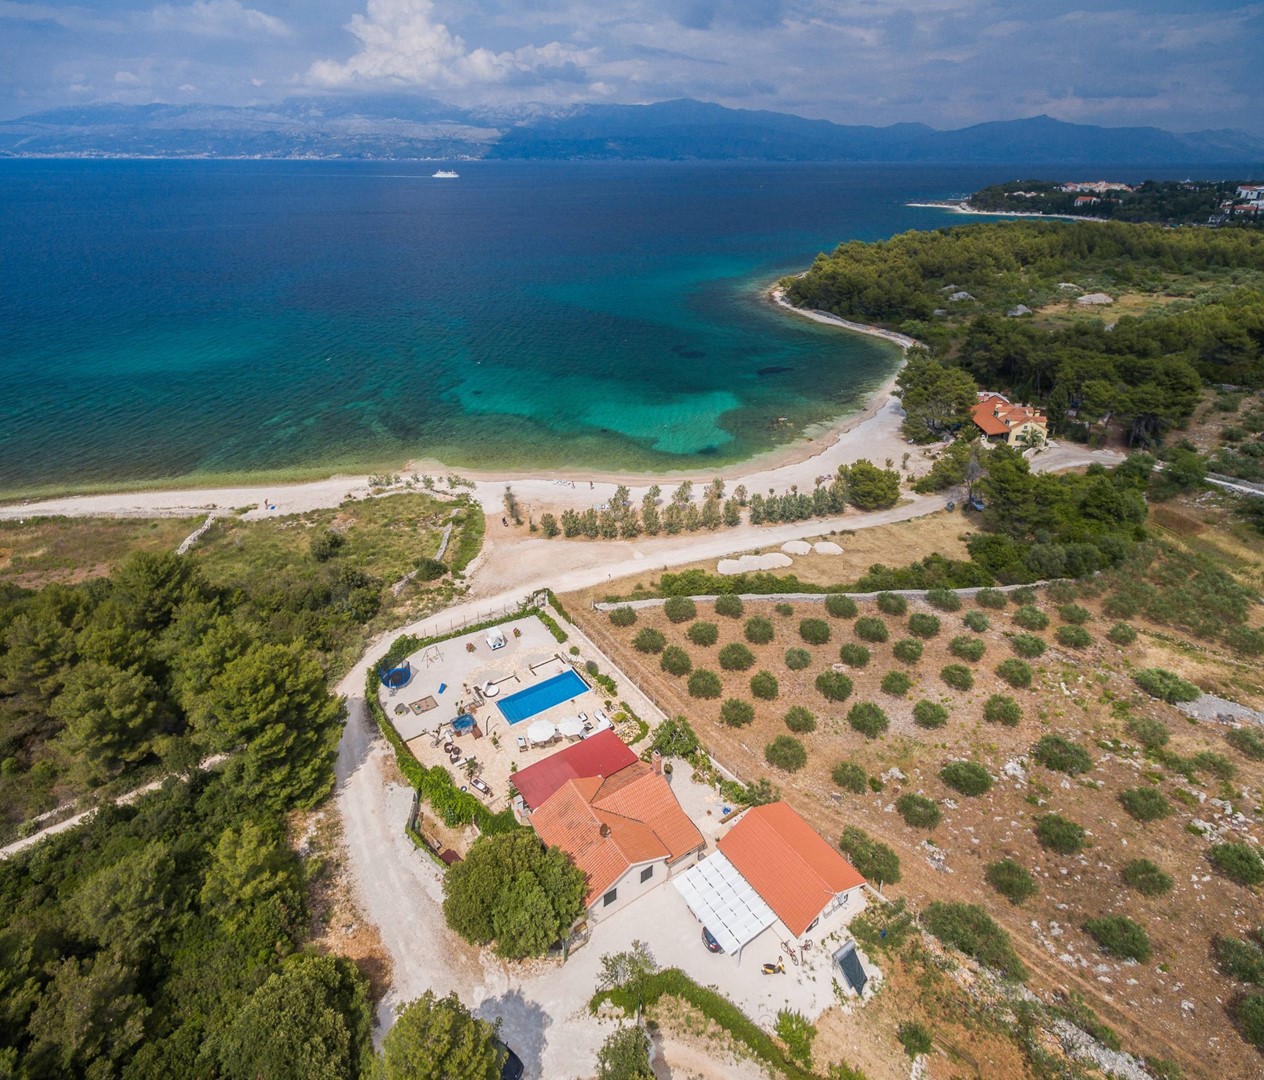 BRAC ВИЛЛЫ - Вилла Beach House Mir с бассейном на пляже на острове Brac - Mutnik